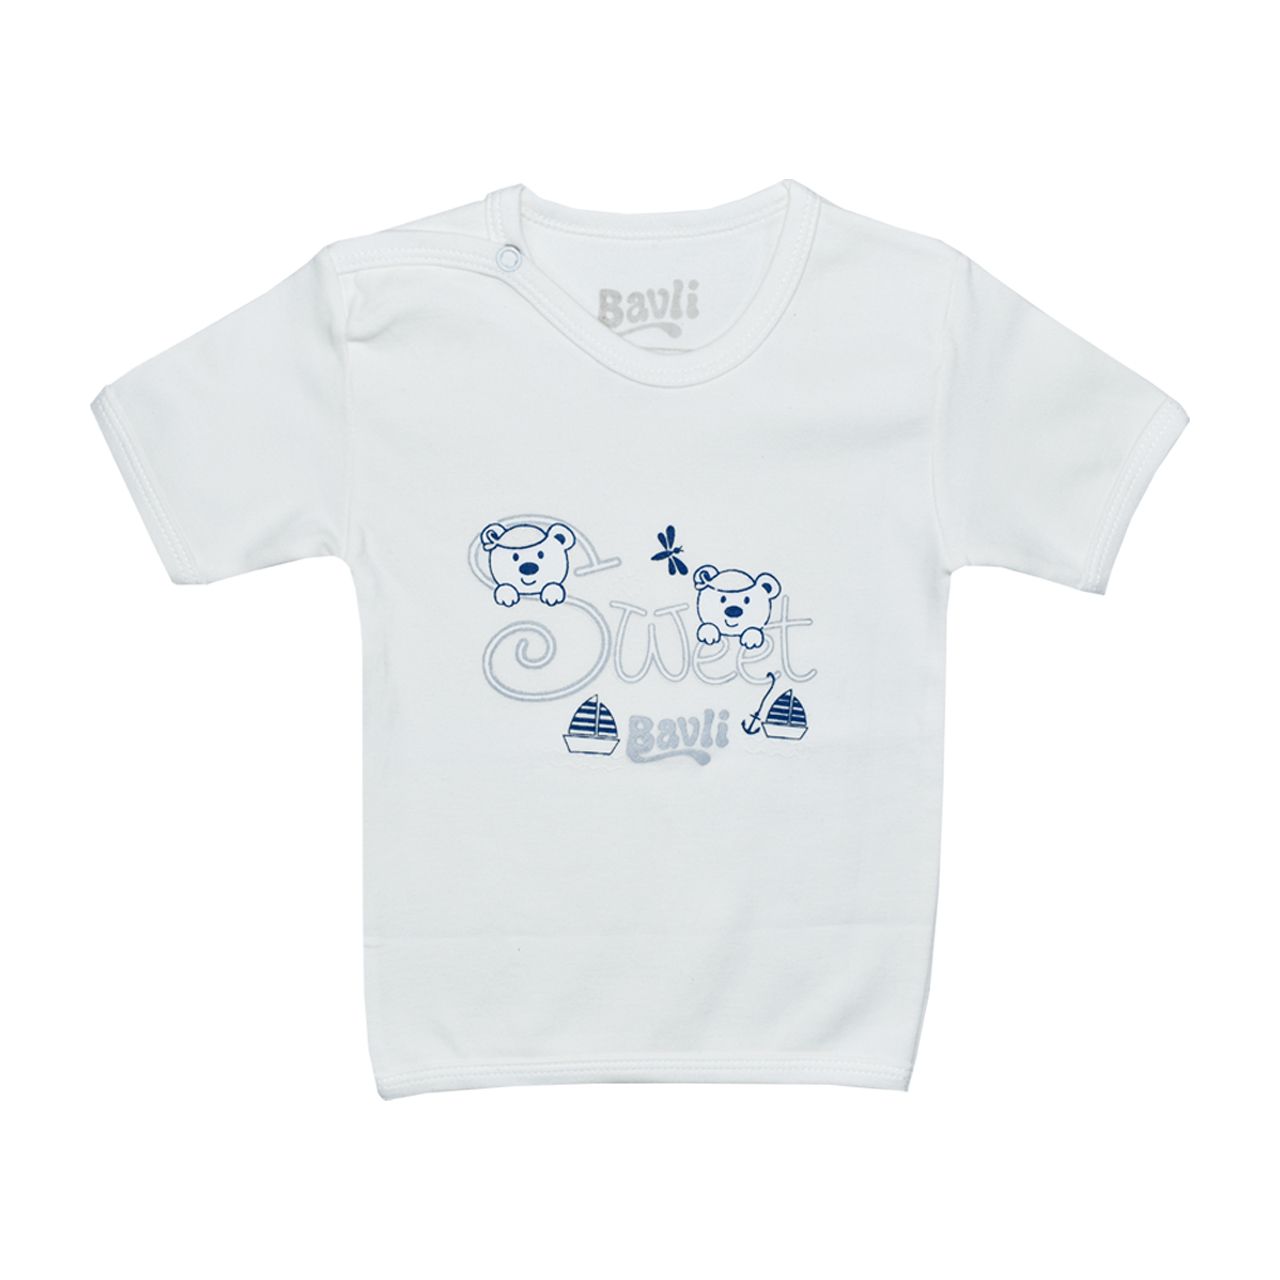 ست تی شرت و شلوارک نوزادی باولی مدل خرس و قایق -  - 5